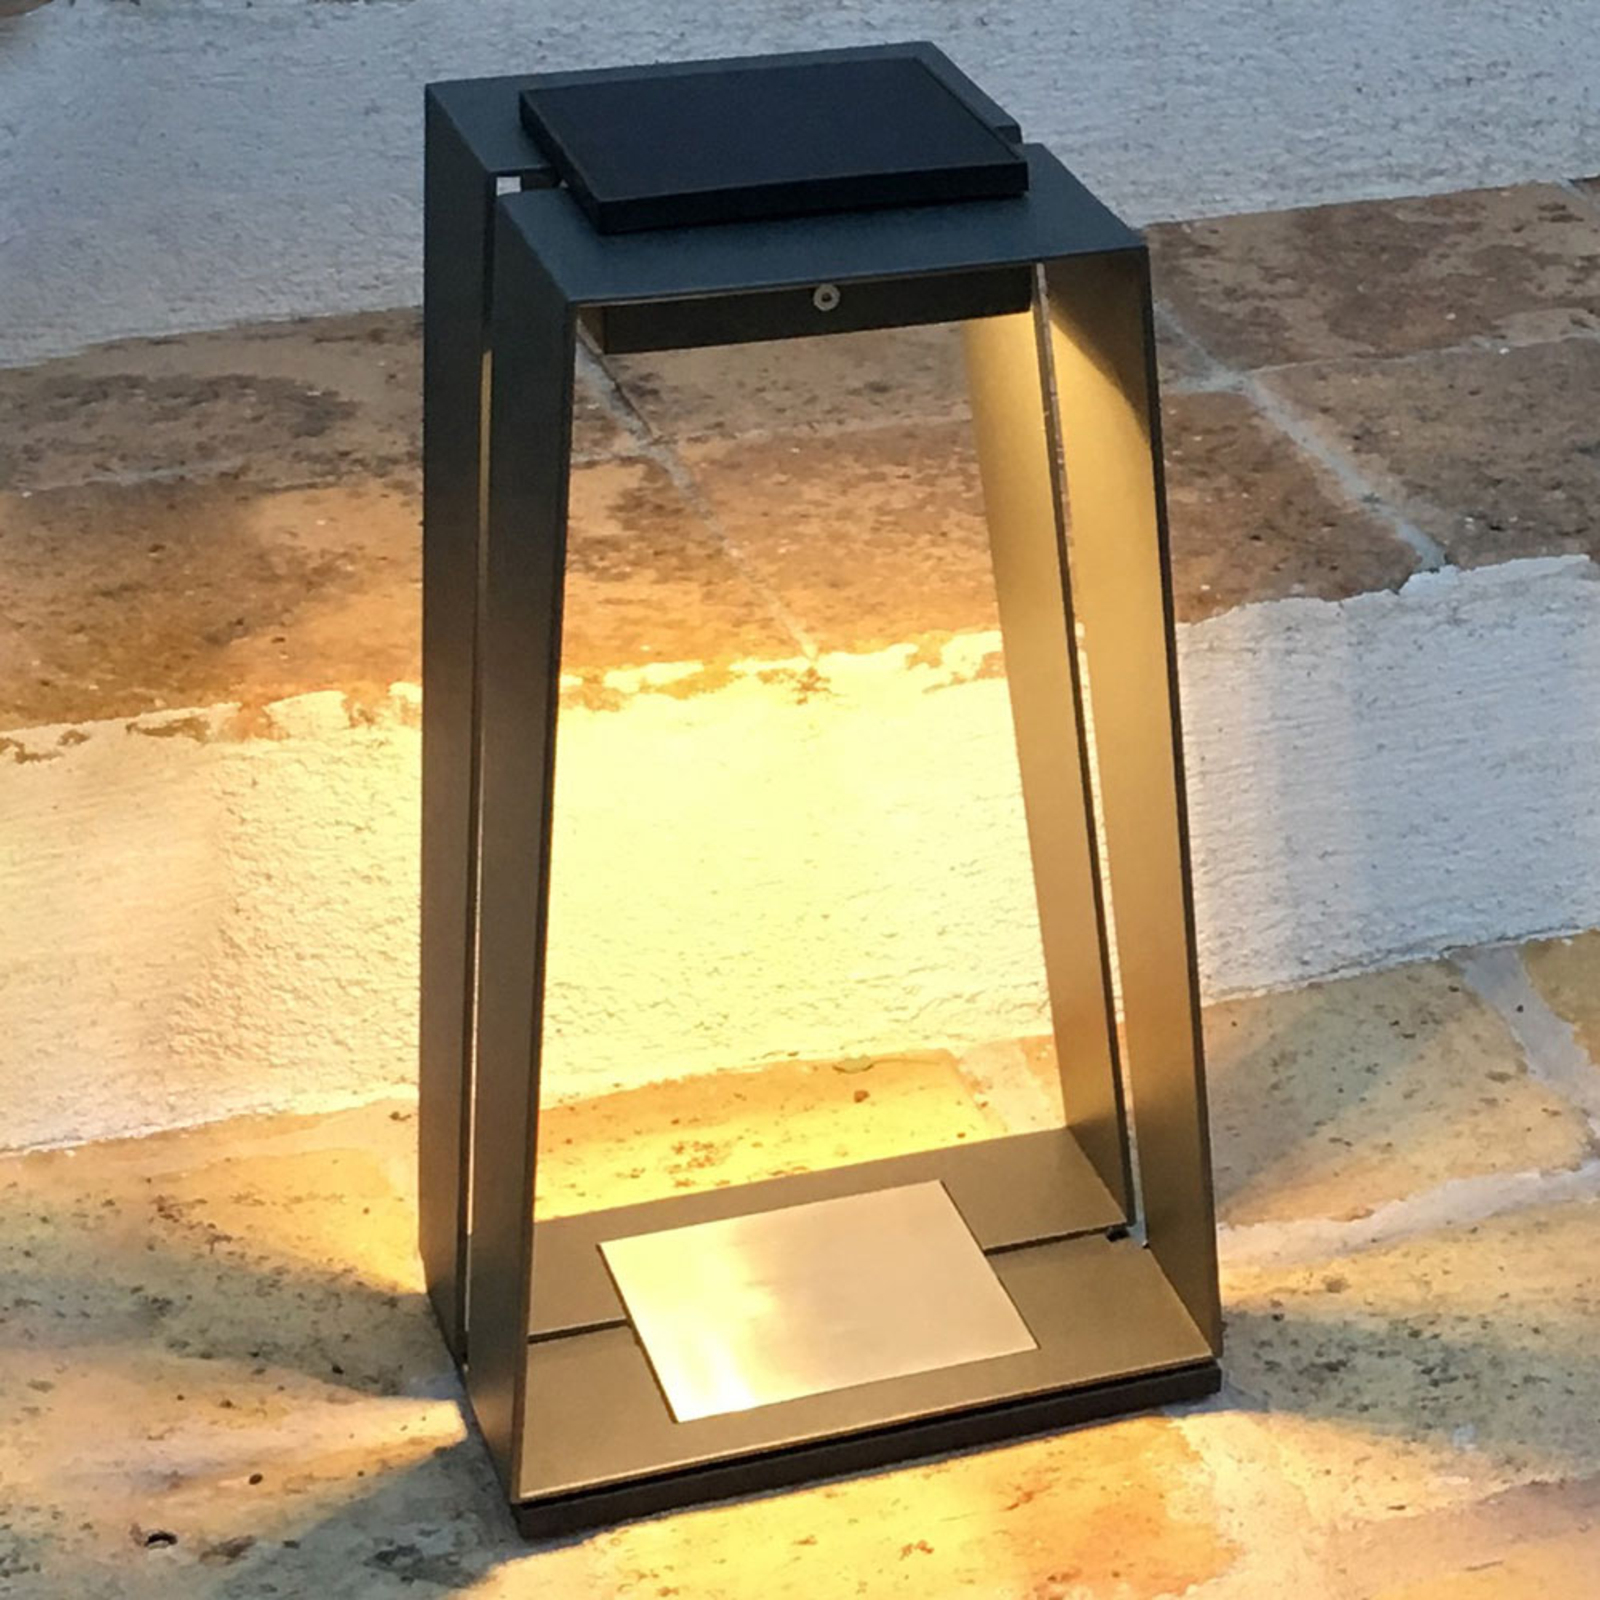 LED-solcellslampa Skaal av aluminium, 40 cm, grå